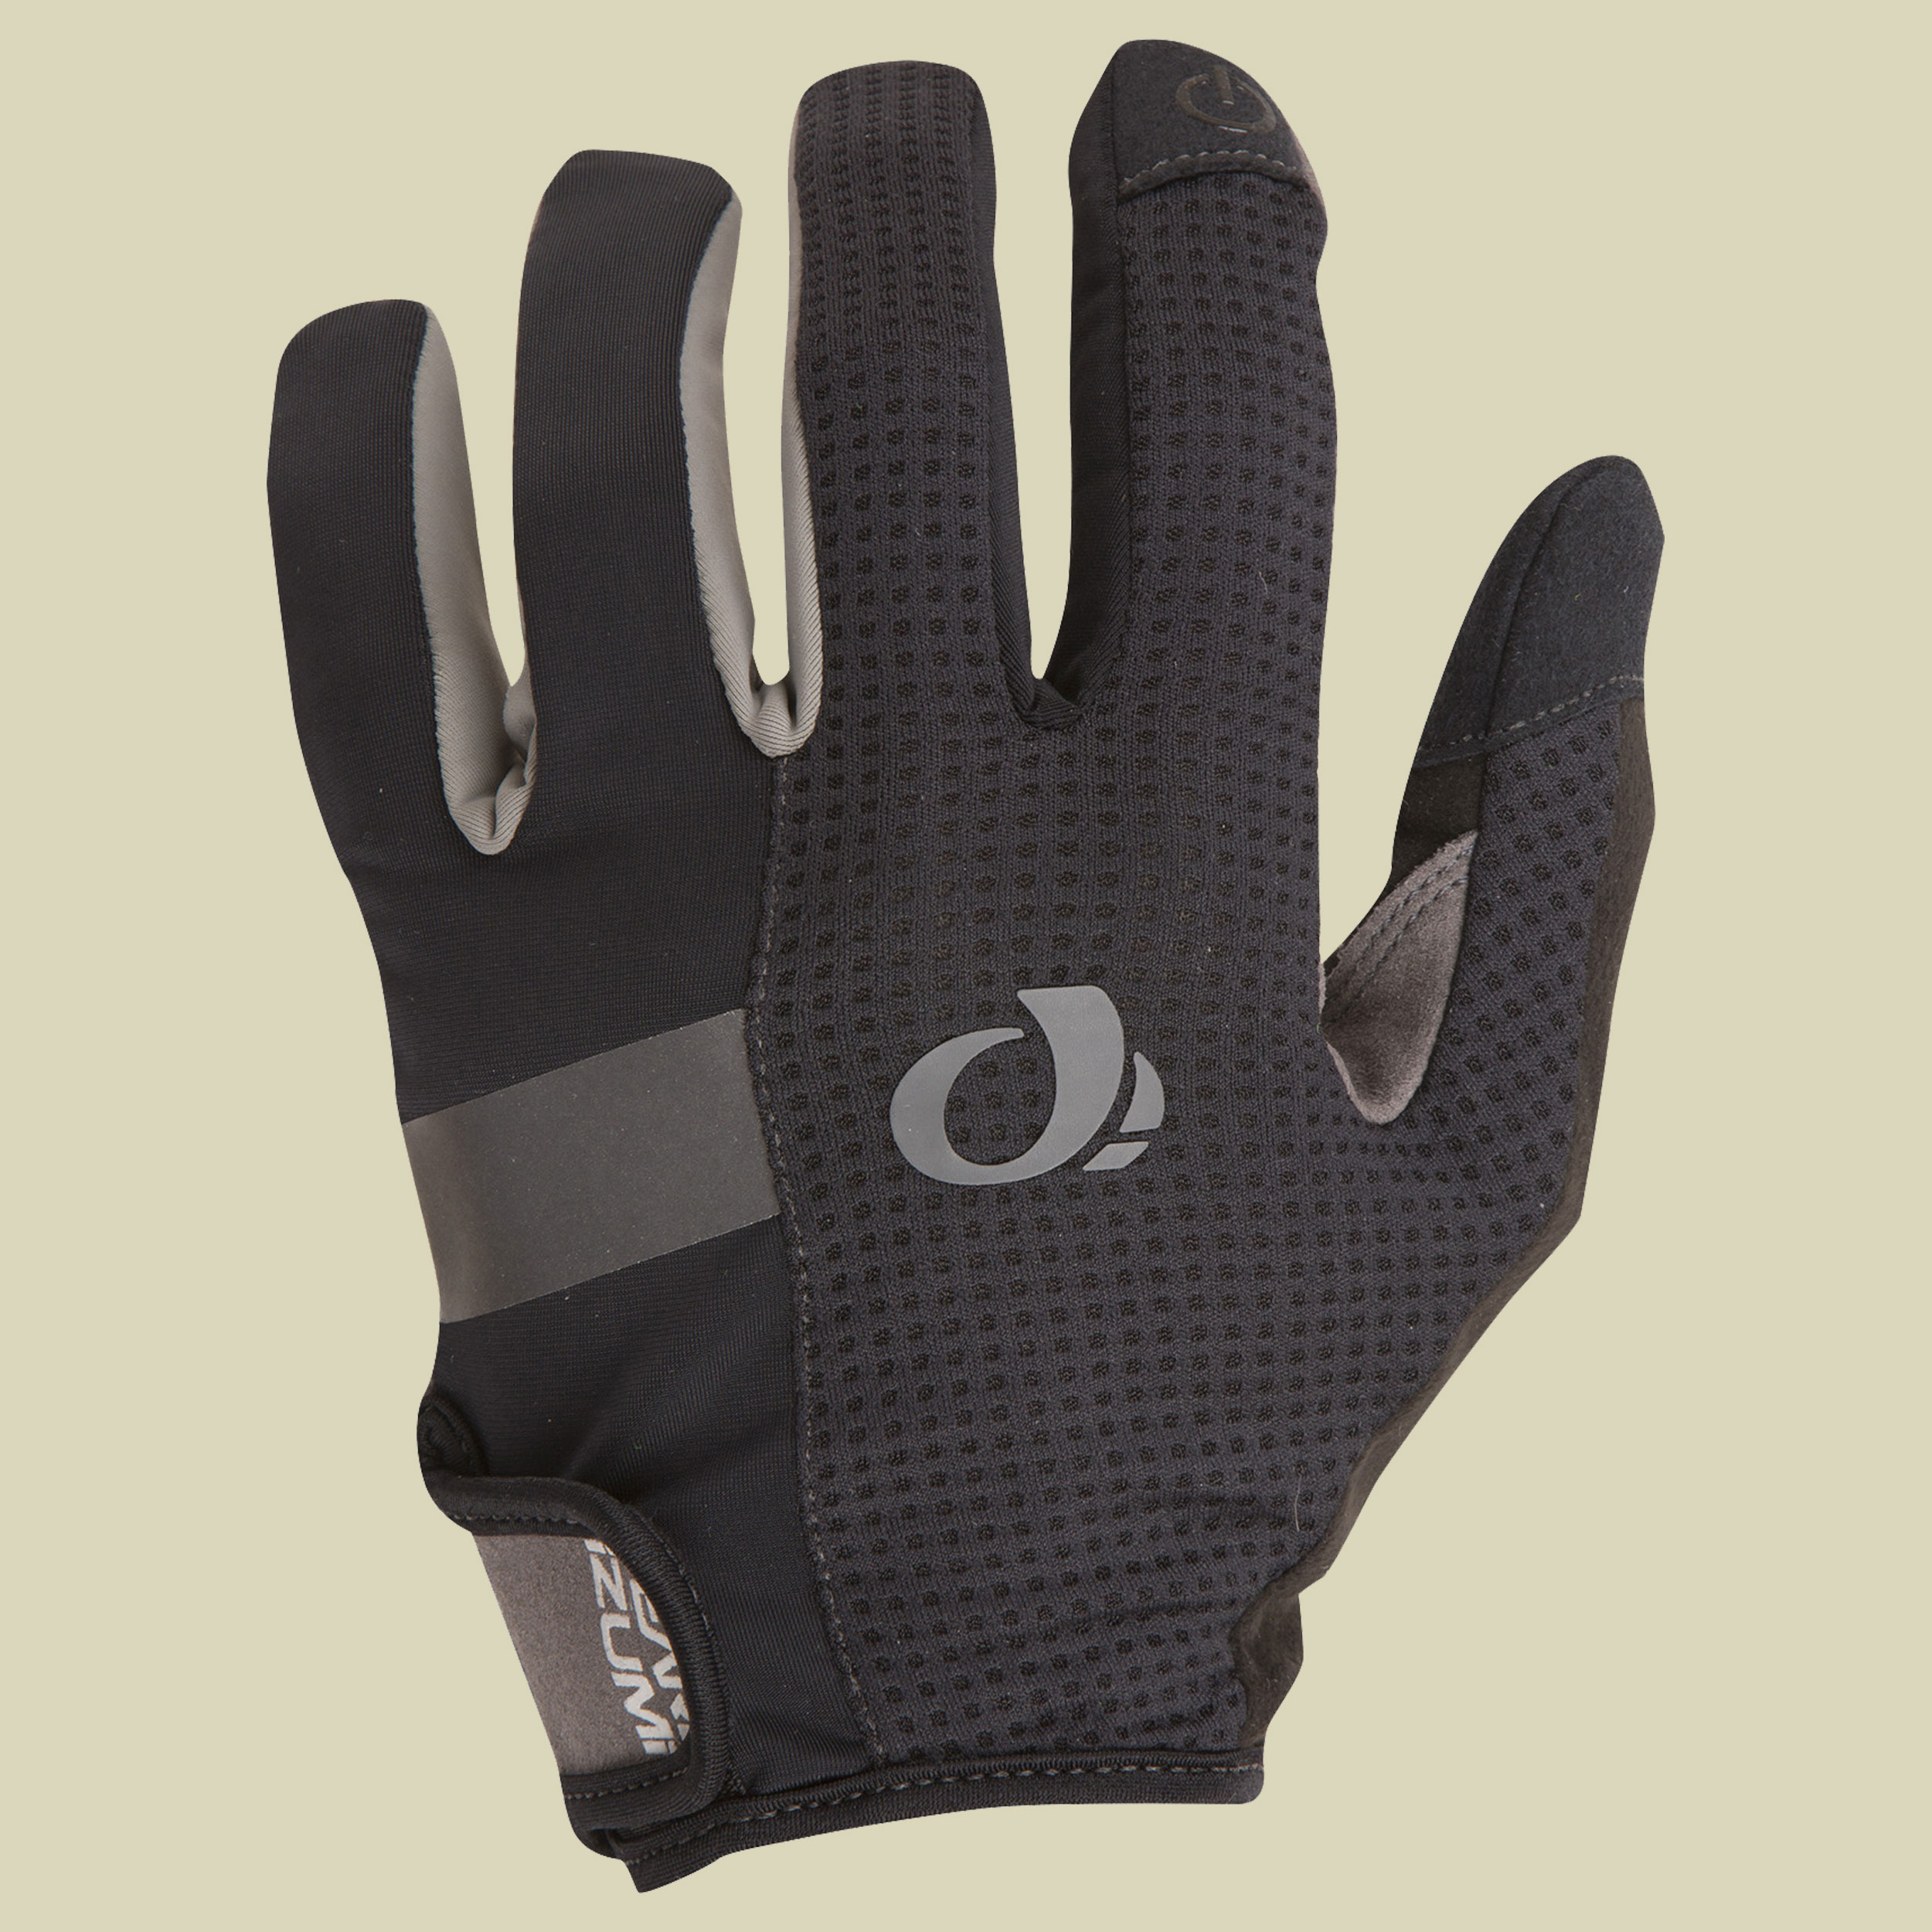 Elite Gel Full Finger Glove Größe L Farbe black